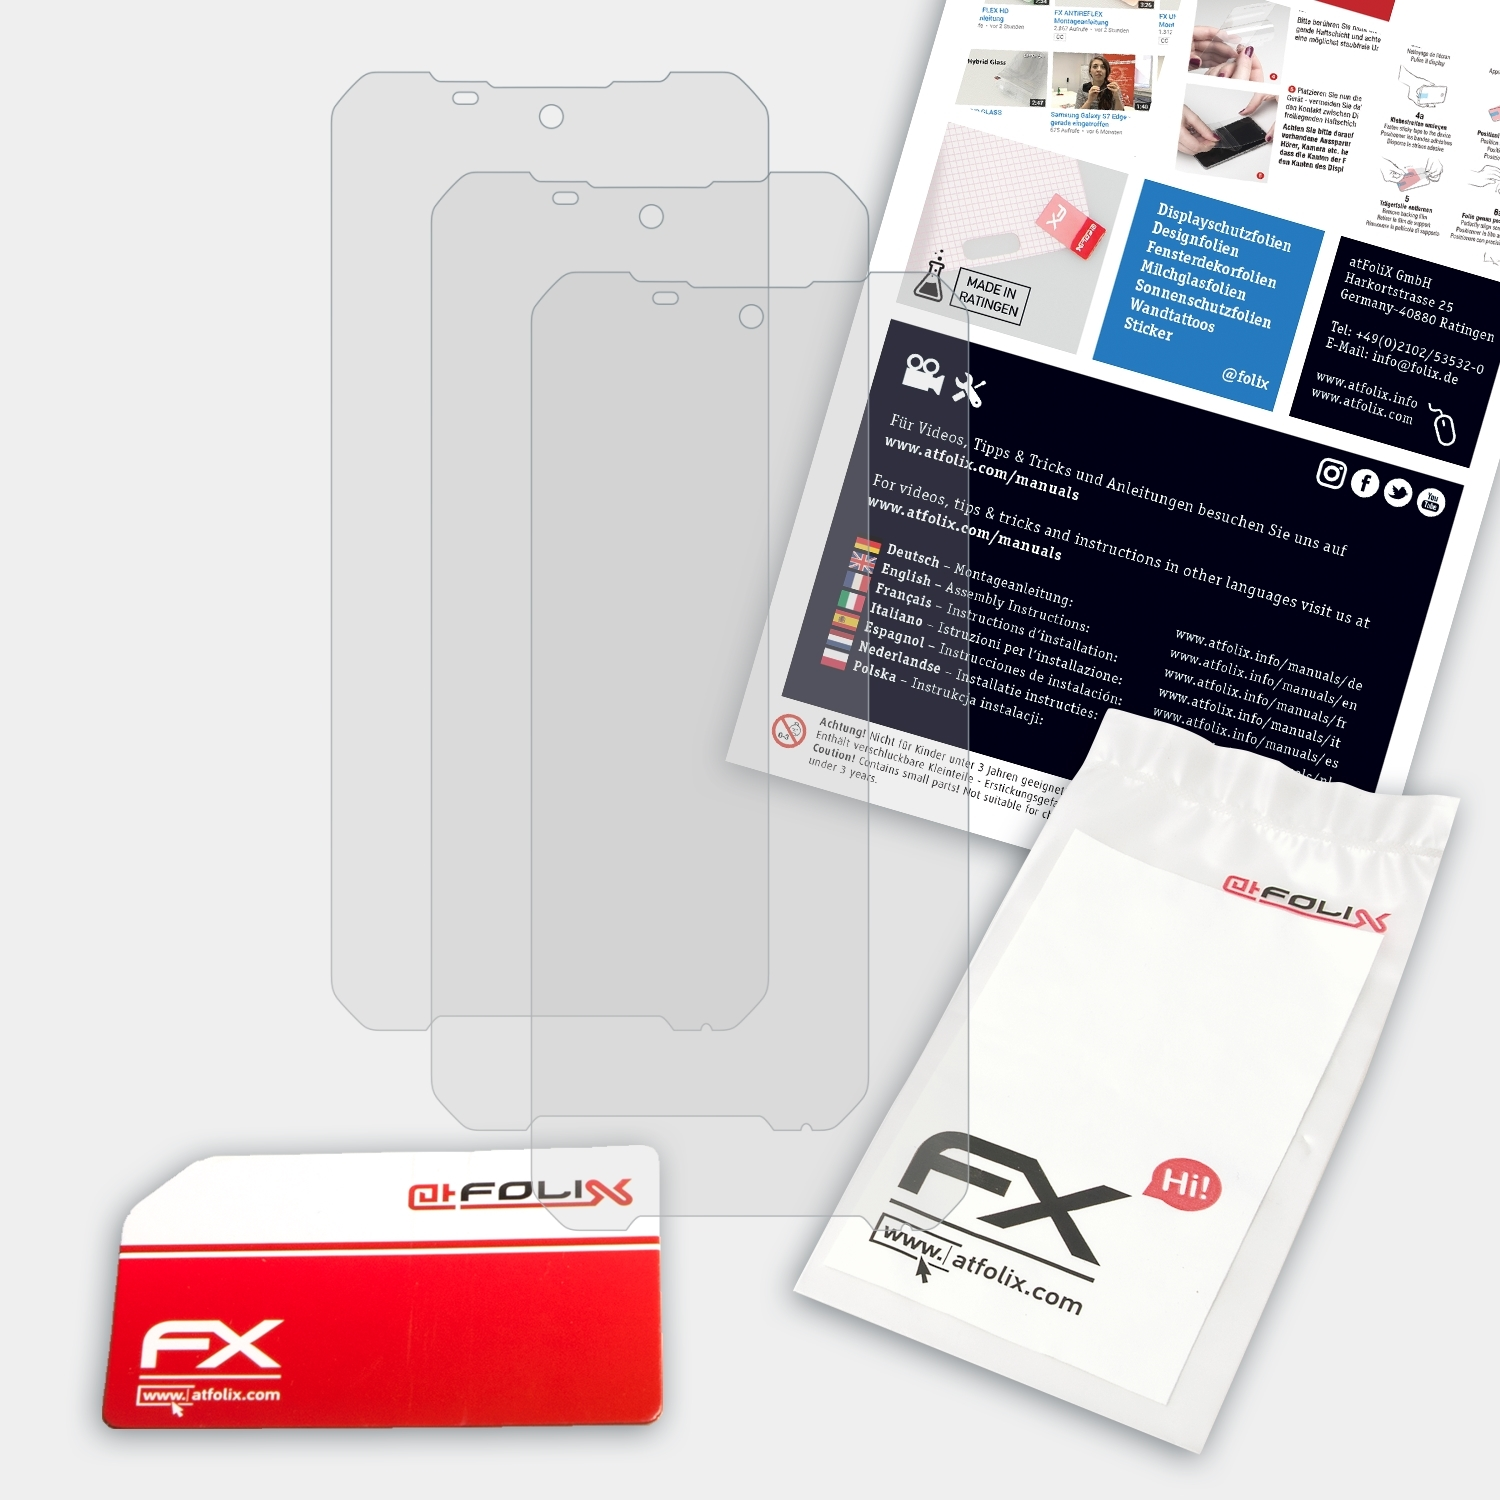 ATFOLIX 3x FX-Antireflex Displayschutz(für Pro) S58 Doogee